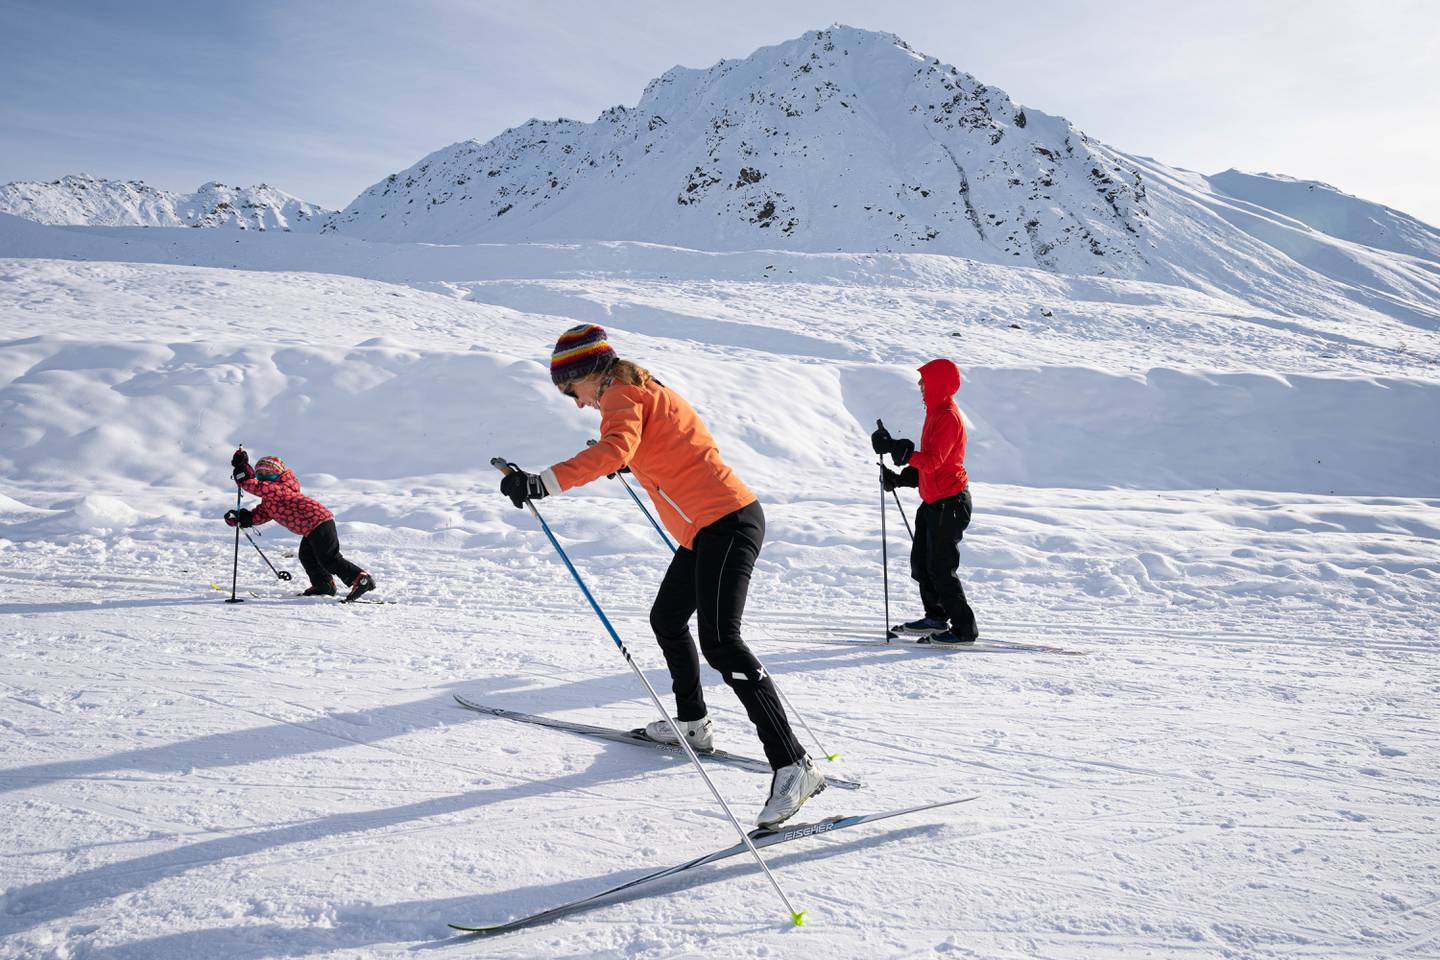 Dana Brokofsky, Eira Brokofsky, hatcher pass, skiing, snow, winter